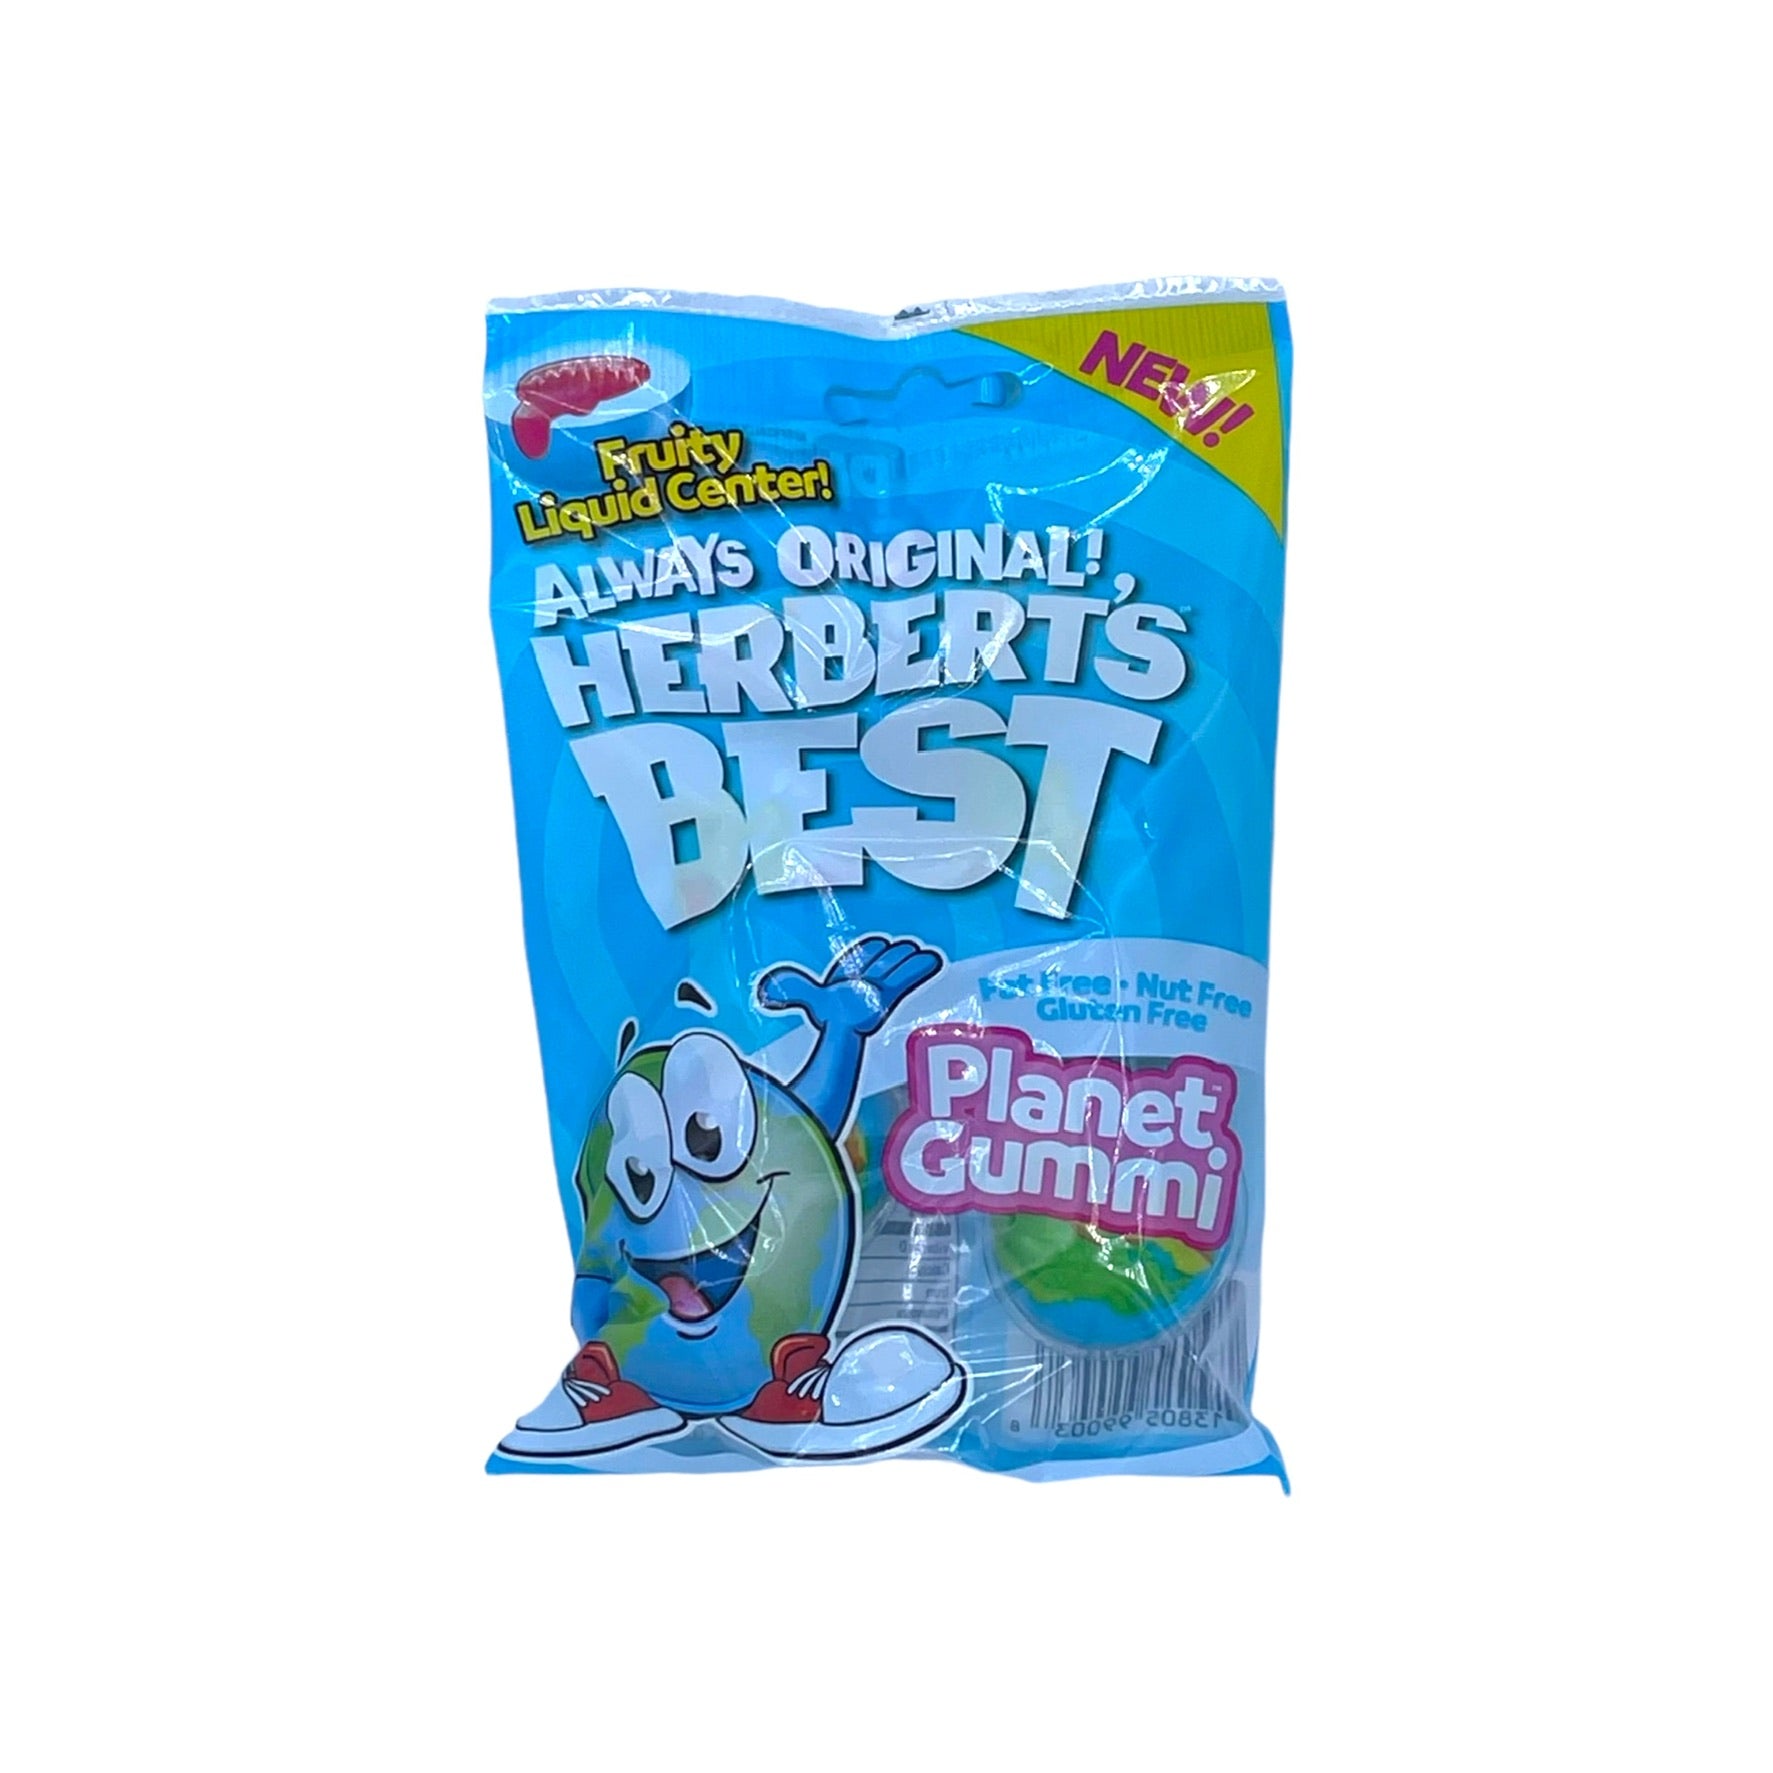 Herbert’s Best Planet Gummies